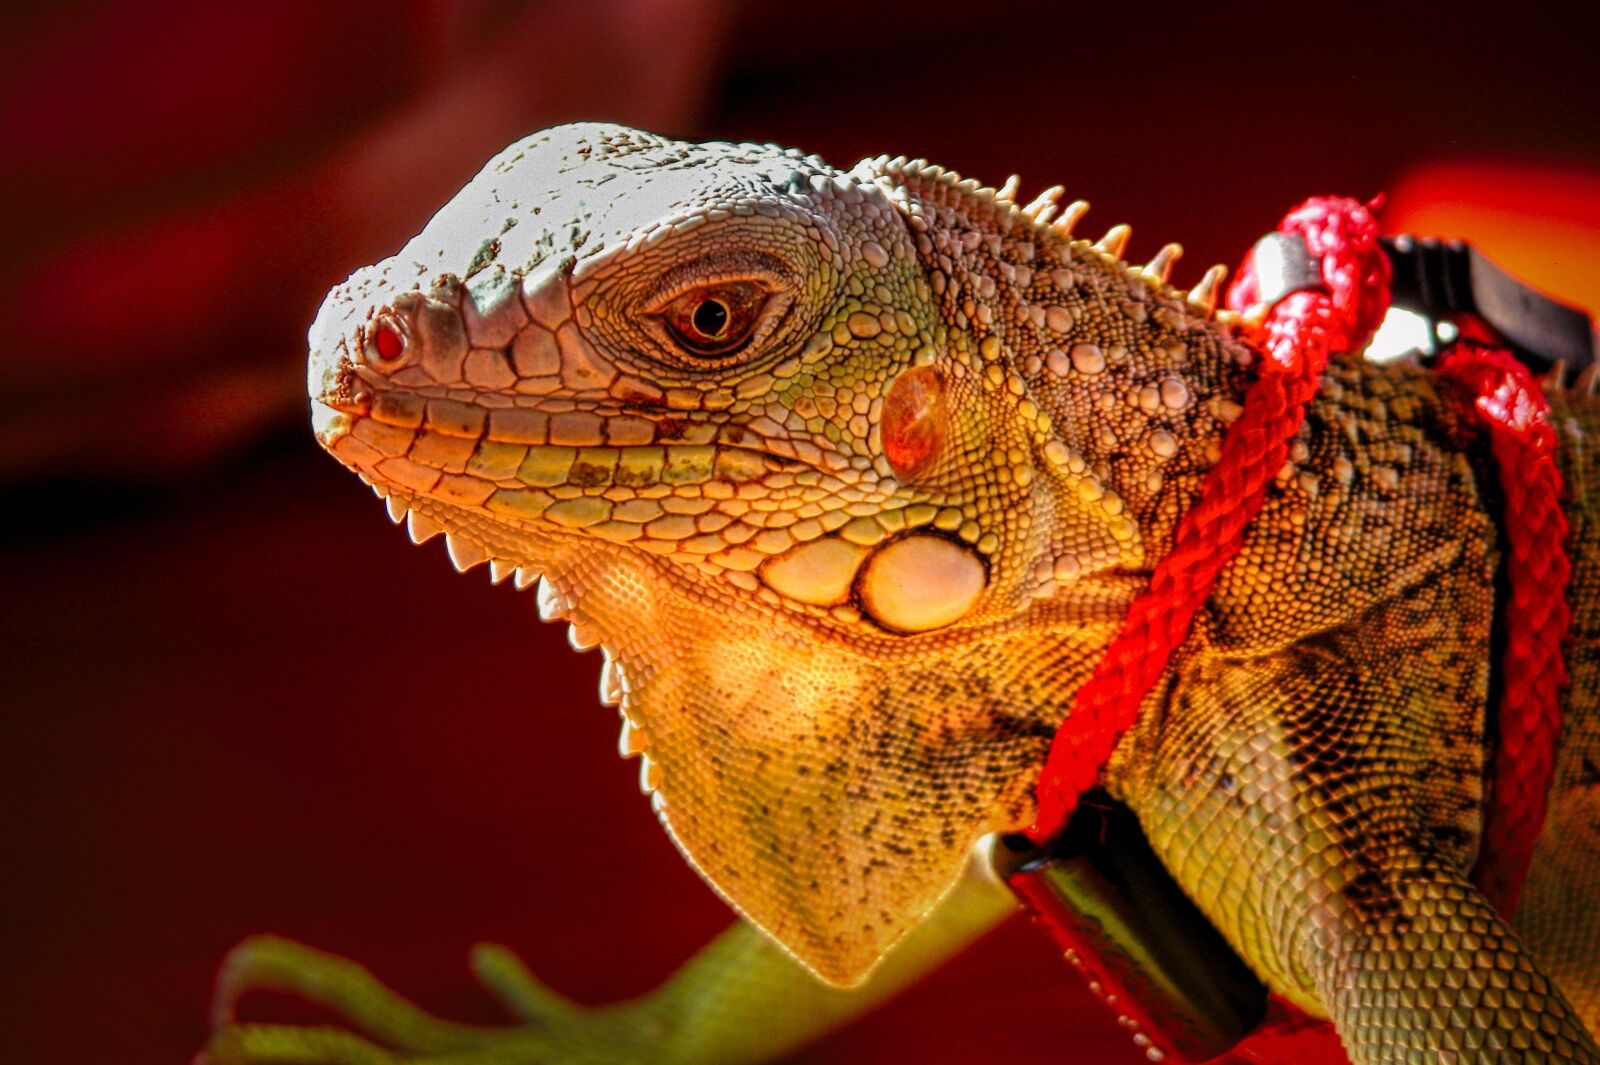 Nikon E5700 sample photo. Lizard, reptile, animal photography